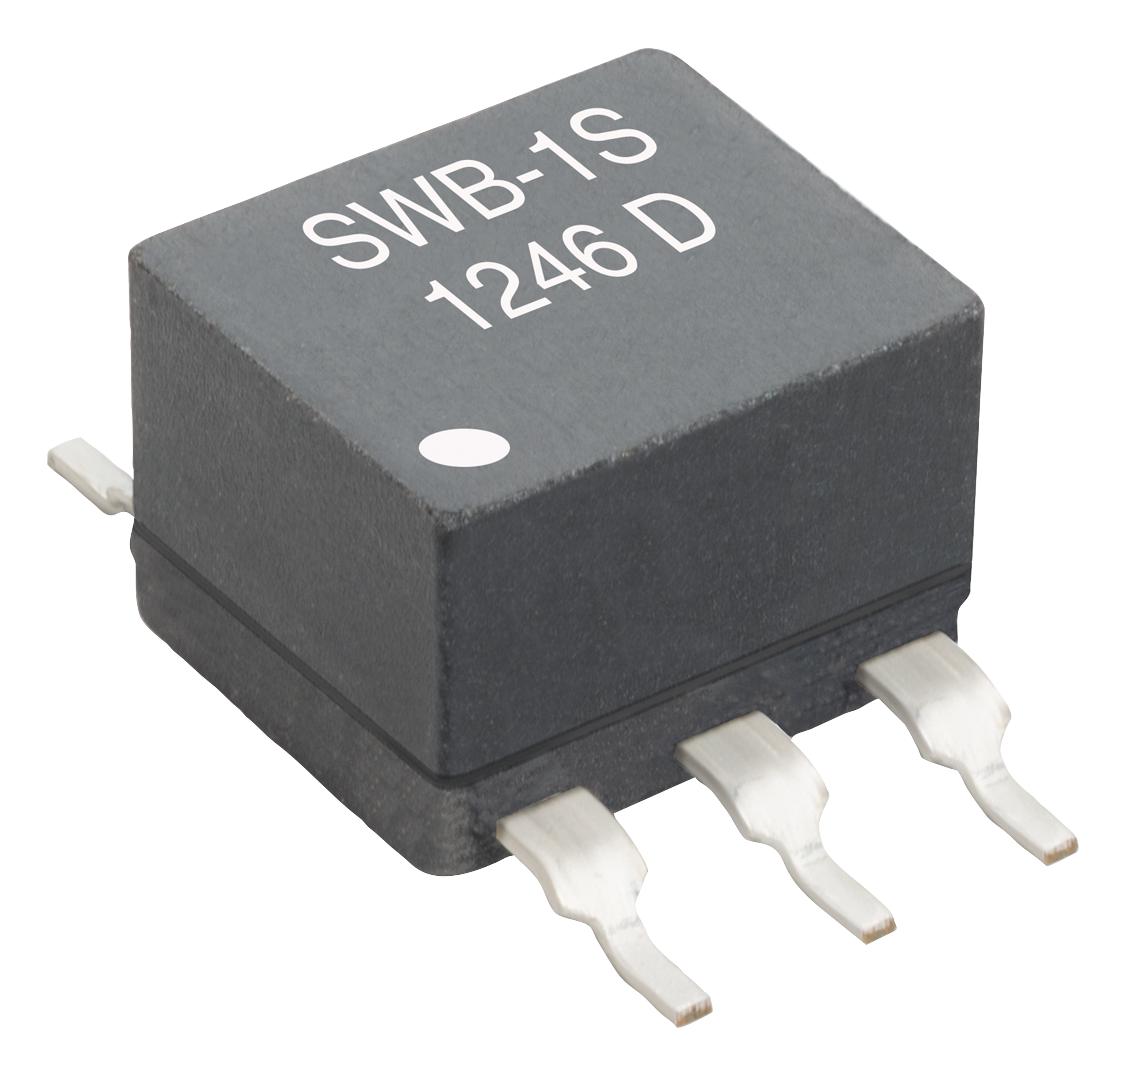 SWB2040-SMLD RF TRANSFORMER, 4:1, 300MHZ COILCRAFT